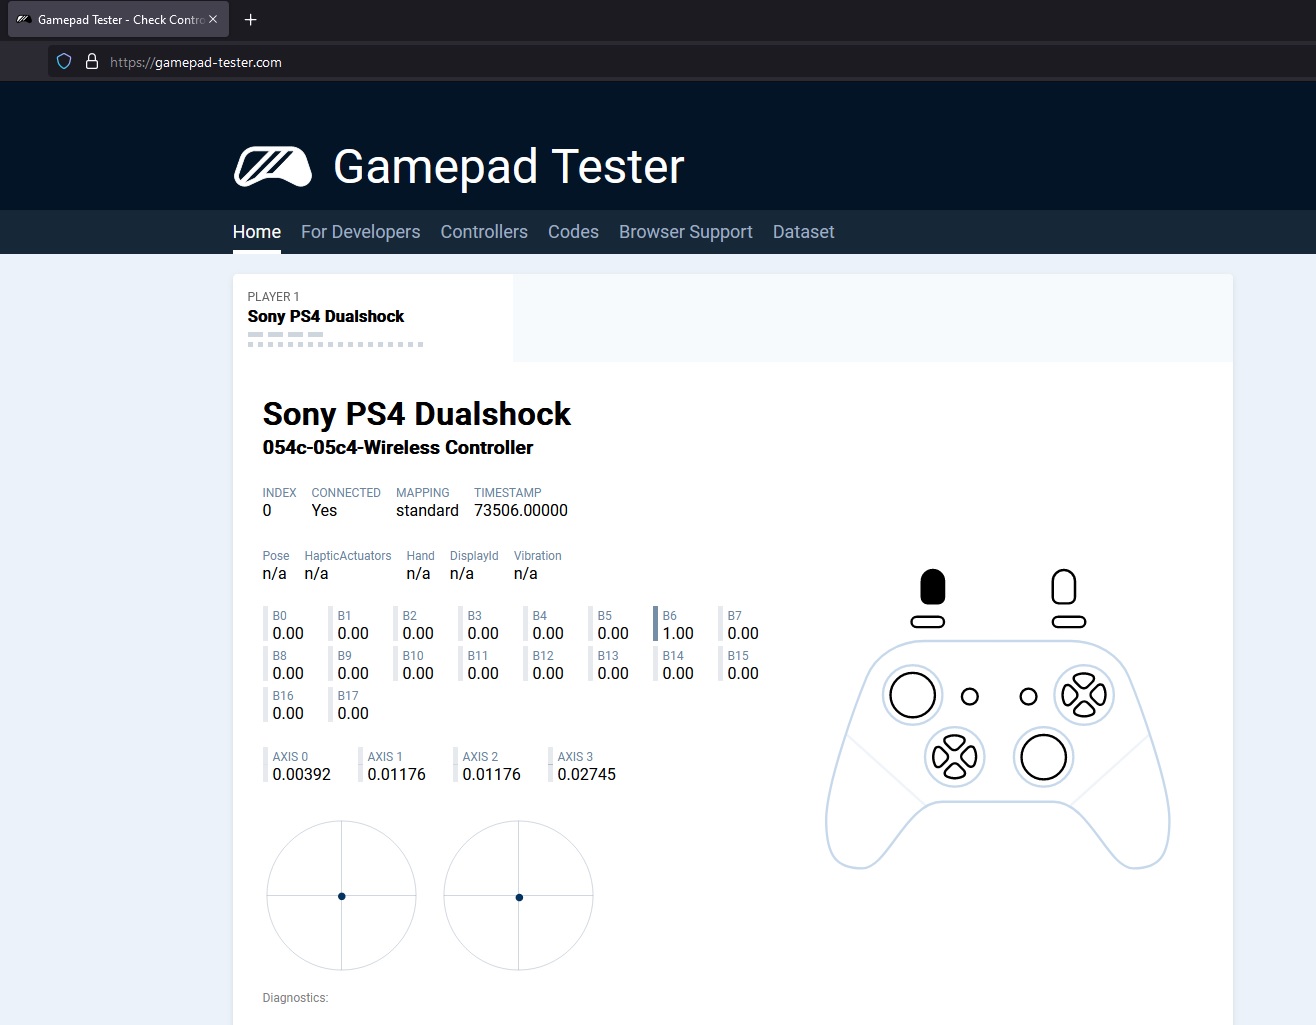 DualShock 4 Gamepad Tester